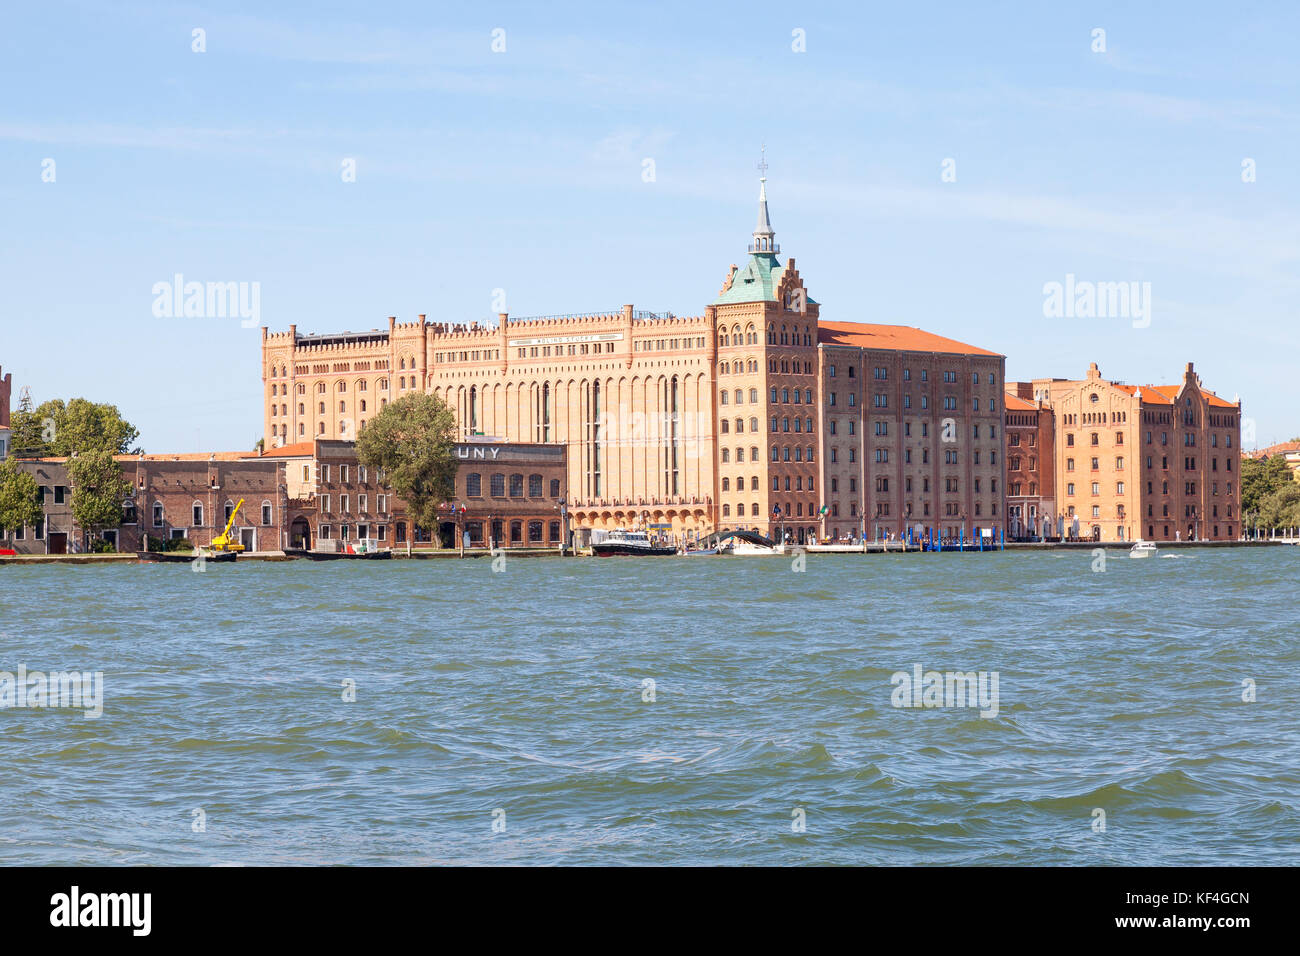 L'hôtel Hilton Molino Stucky, Giudecca, Venise, Vénétie, Italie vue à travers le canal Giudecca. C'est un ancien moulin à farine historique de la lumière du matin Banque D'Images